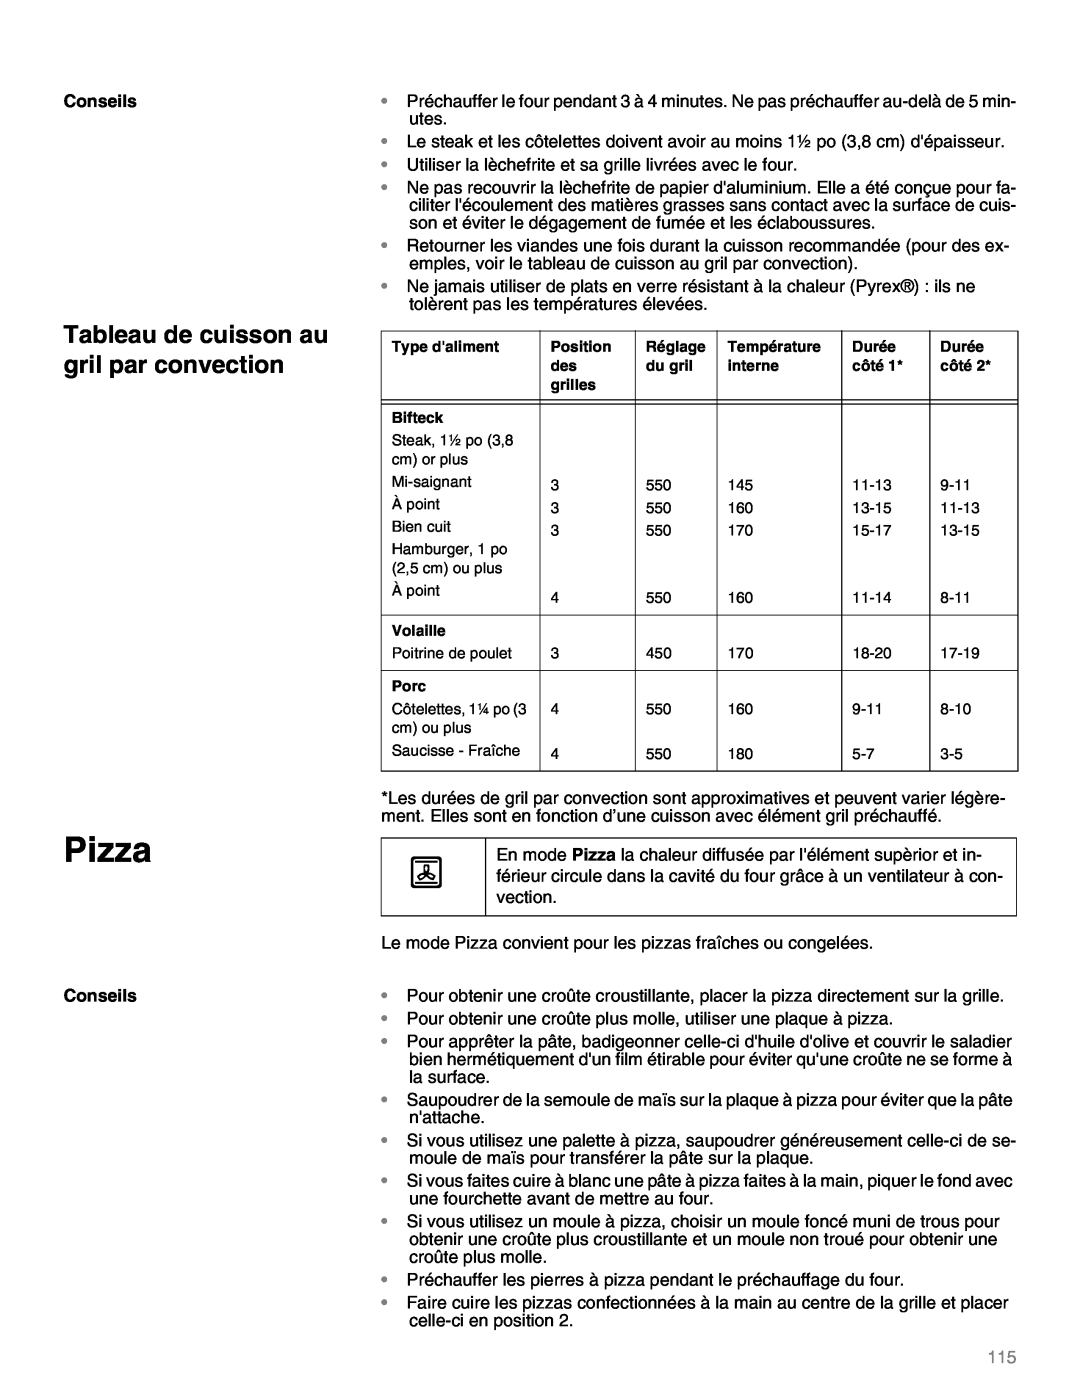 Thermador M301E, M271E manual Pizza, Tableau de cuisson au gril par convection, Conseils 